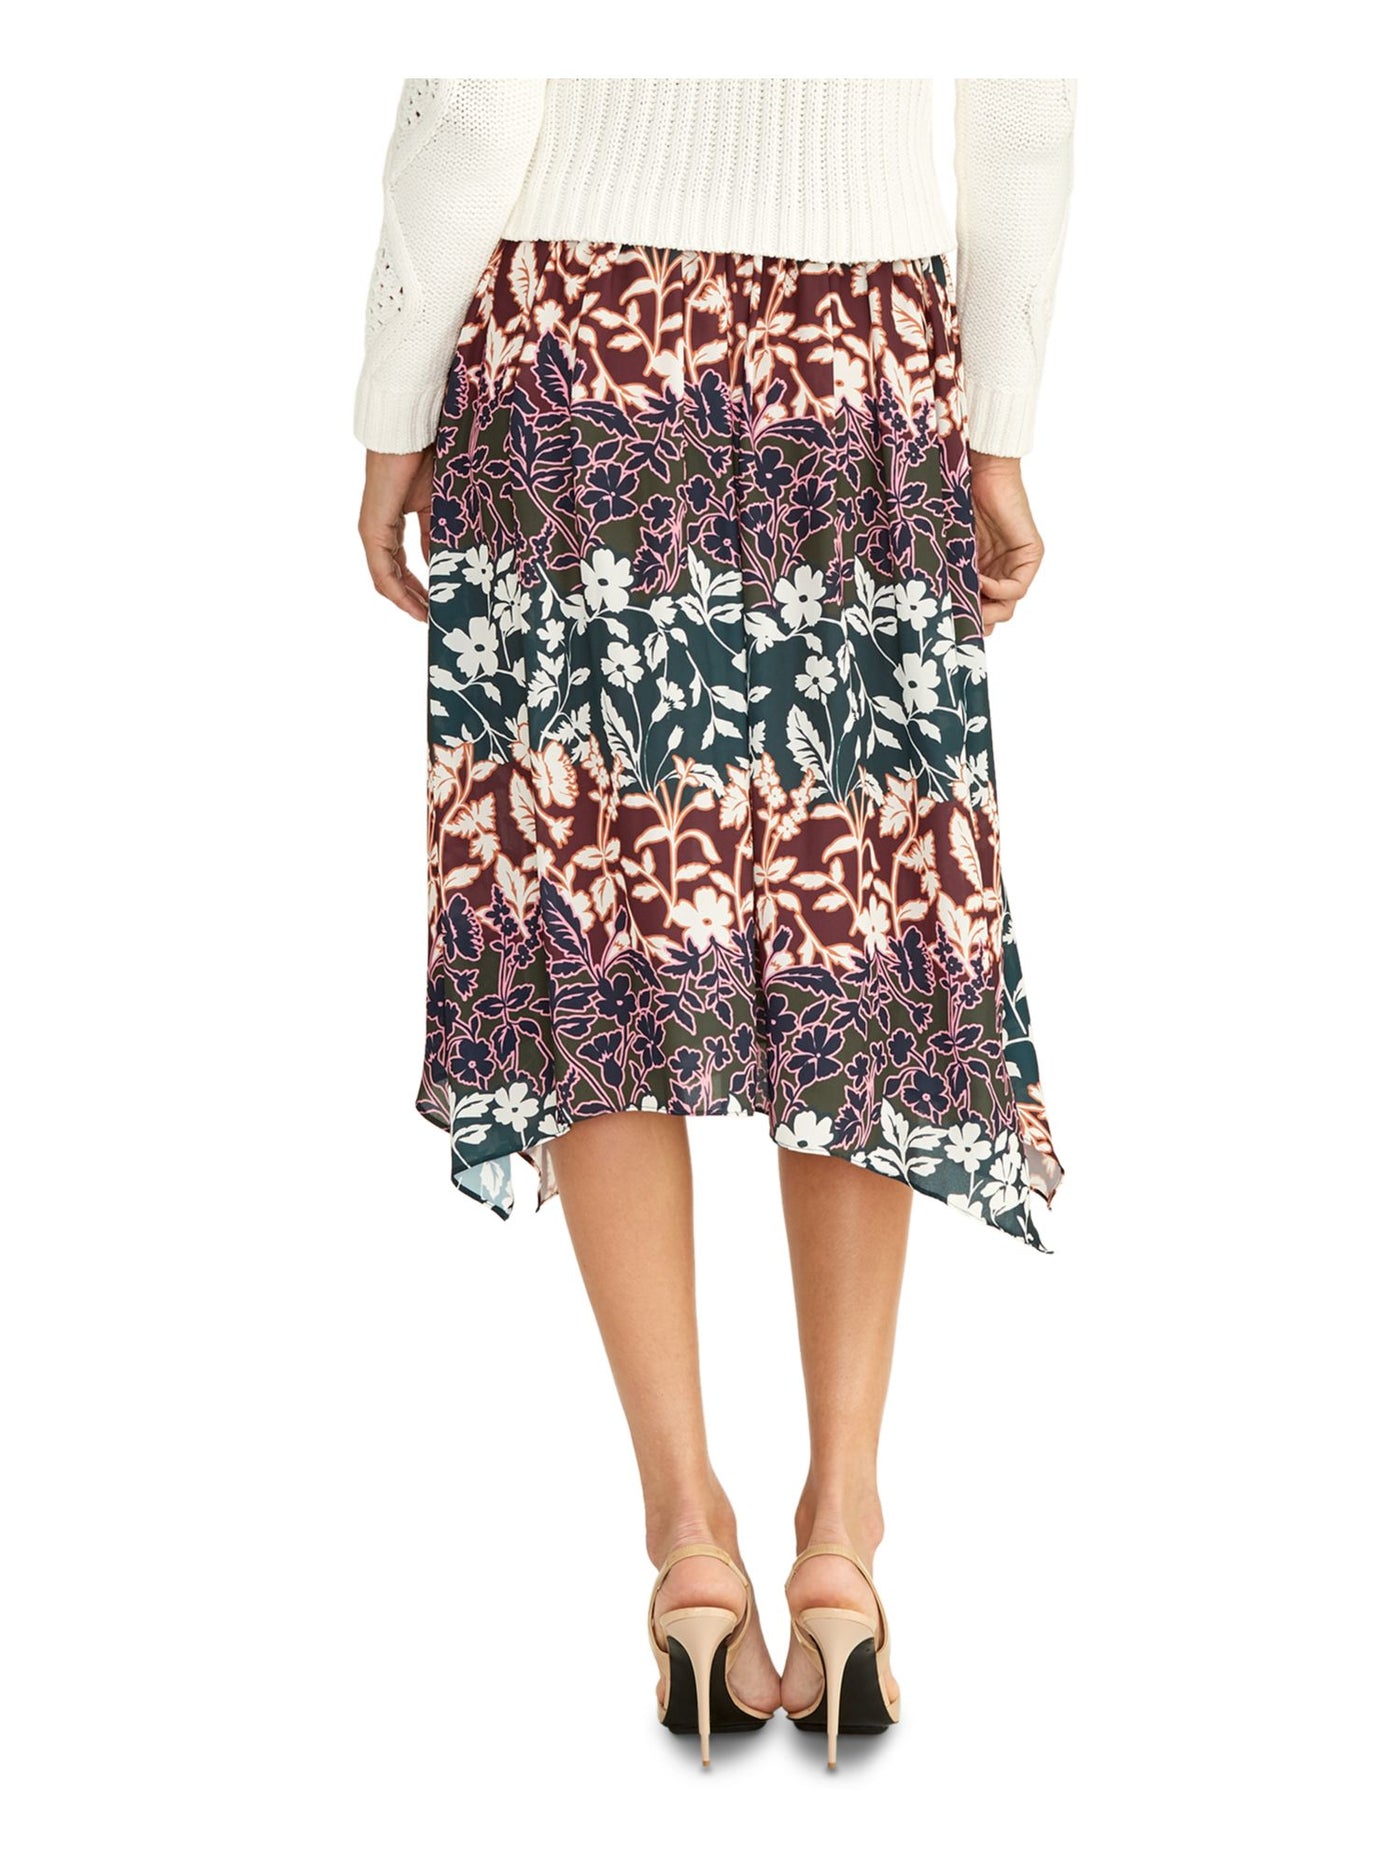 RACHEL RACHEL ROY Womens Burgundy Sheer Floral Knee Length Peasant Skirt XS